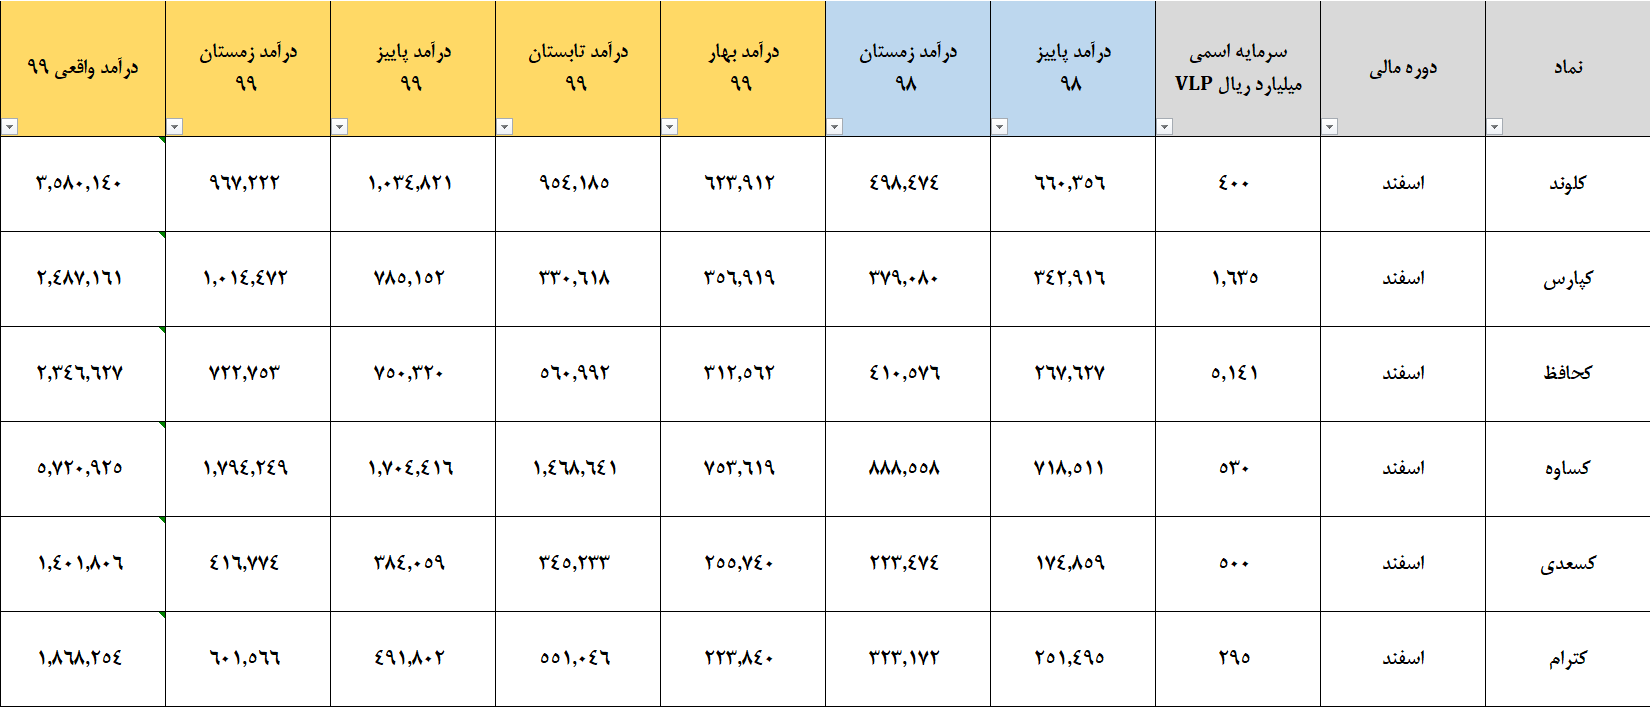 تحلیل برخی از نمادهای گروه کاشی و سرامیک بورس تهران